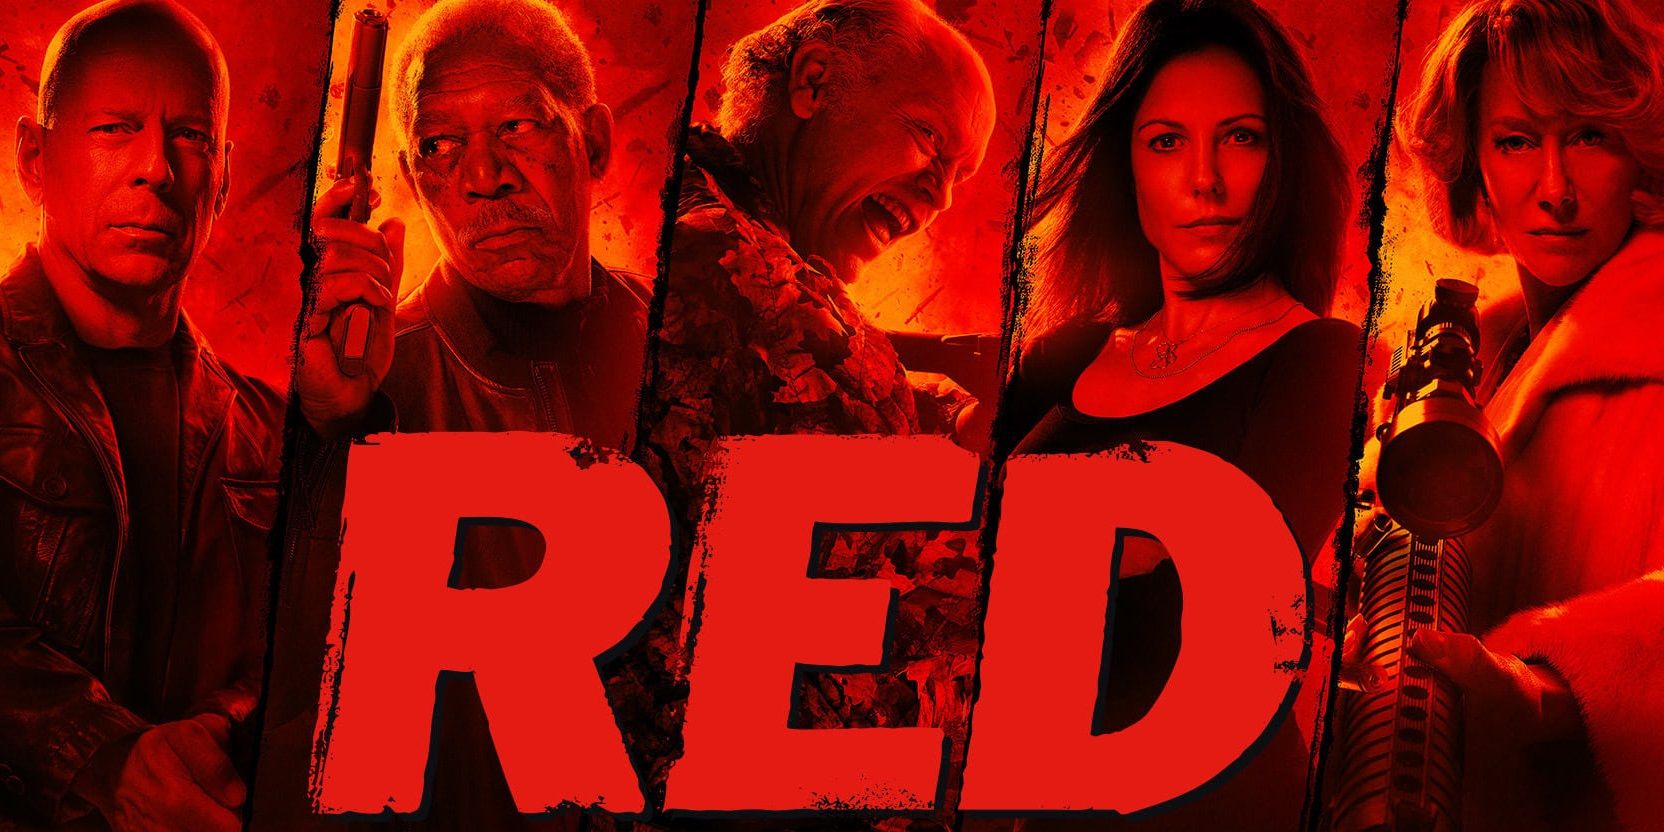 RED 2, Bruce Willis, Helen Mirren, Morgan Freeman